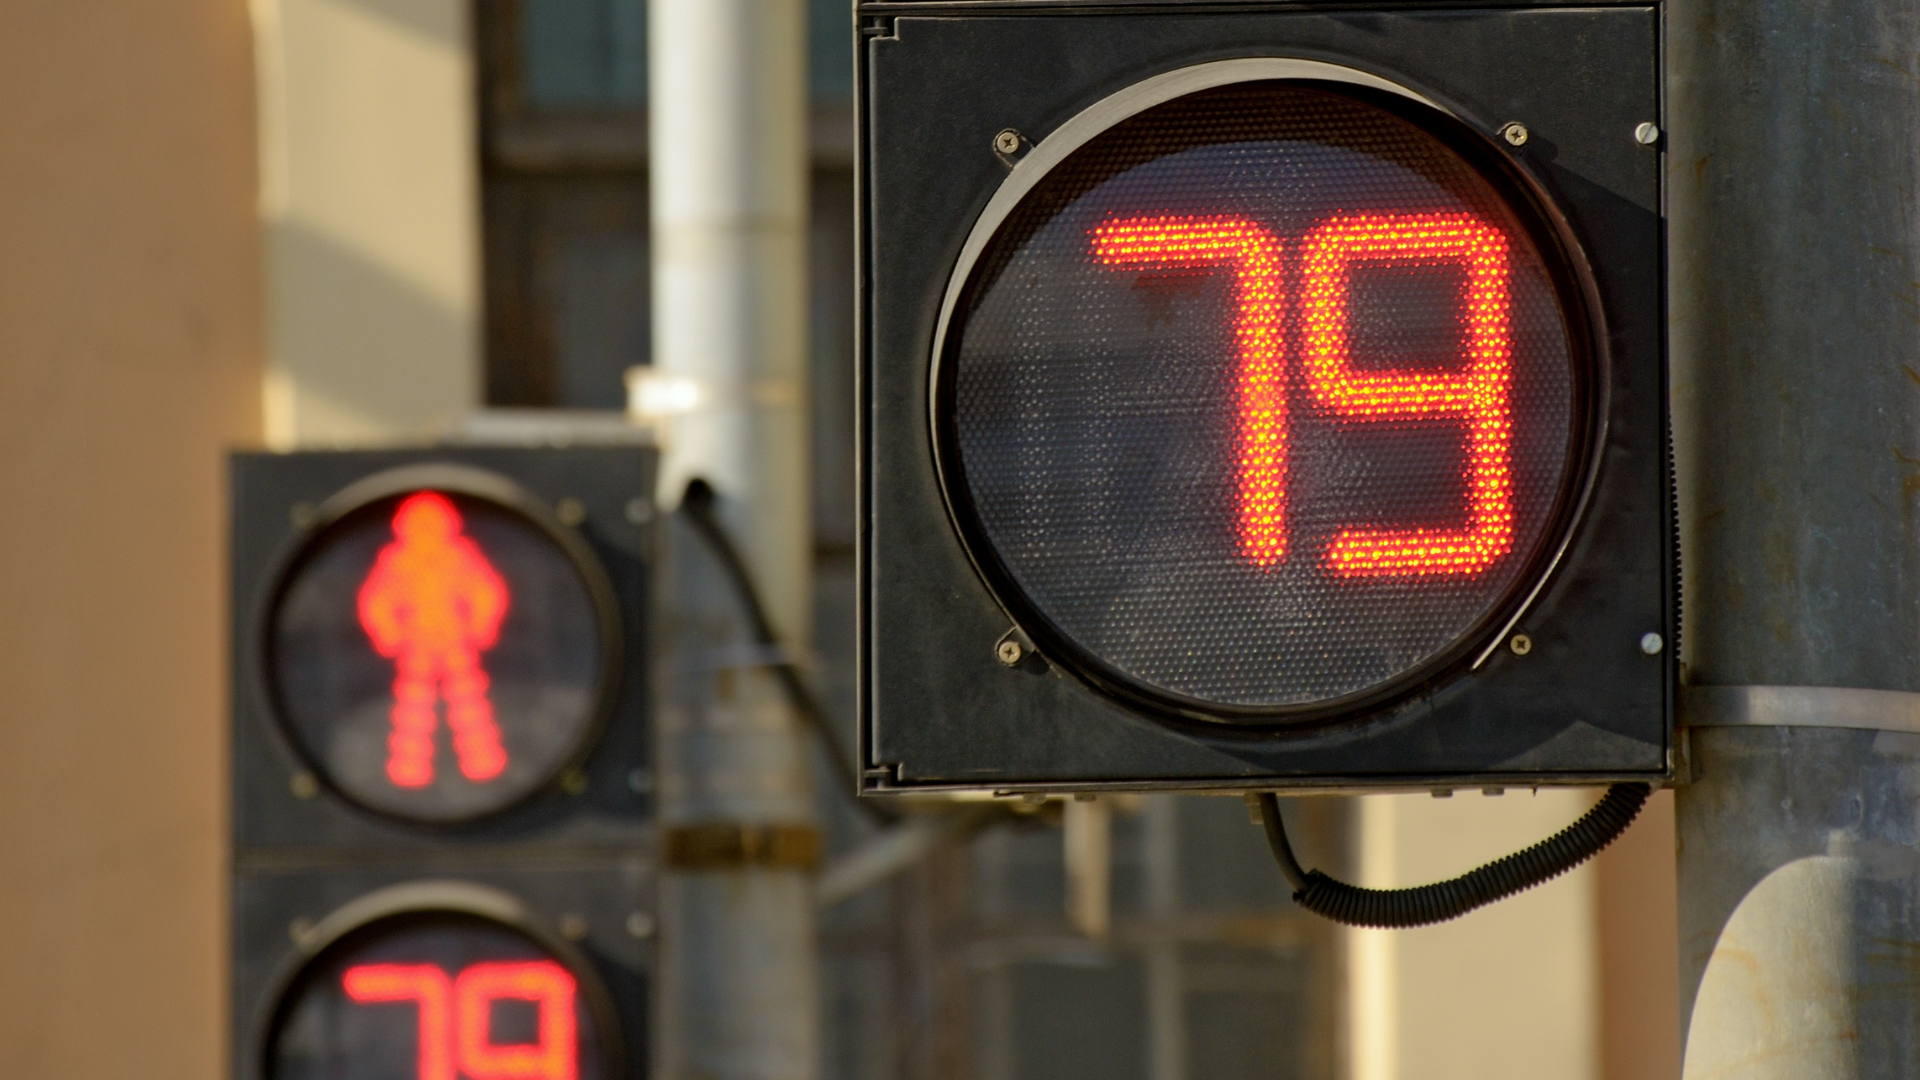  Fotografia aproximada mostra, em primeiro plano, um semáforo fechado para a travessia de pedestres, com o letreiro LED indicando o número "79". Ao fundo, outro semáforo, posicionado à distância, mostra as mesmas informações.